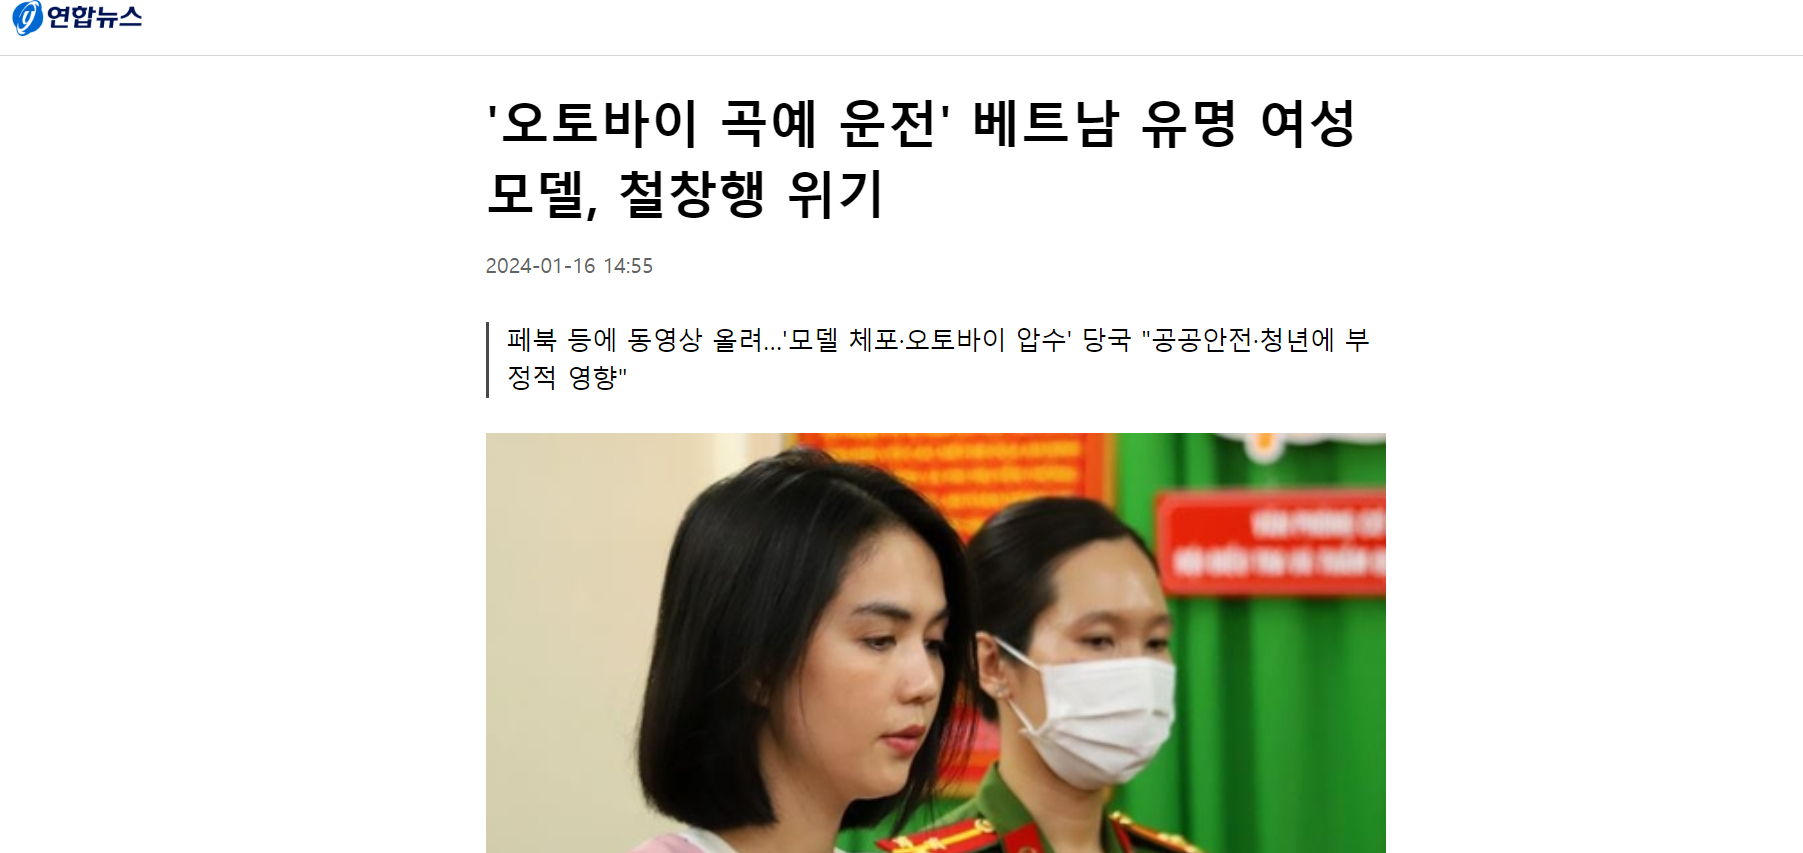 Ngọc Trinh lên báo Hàn Quốc ngay sau khi bị truy tố 2-7 năm tù- Ảnh 1.